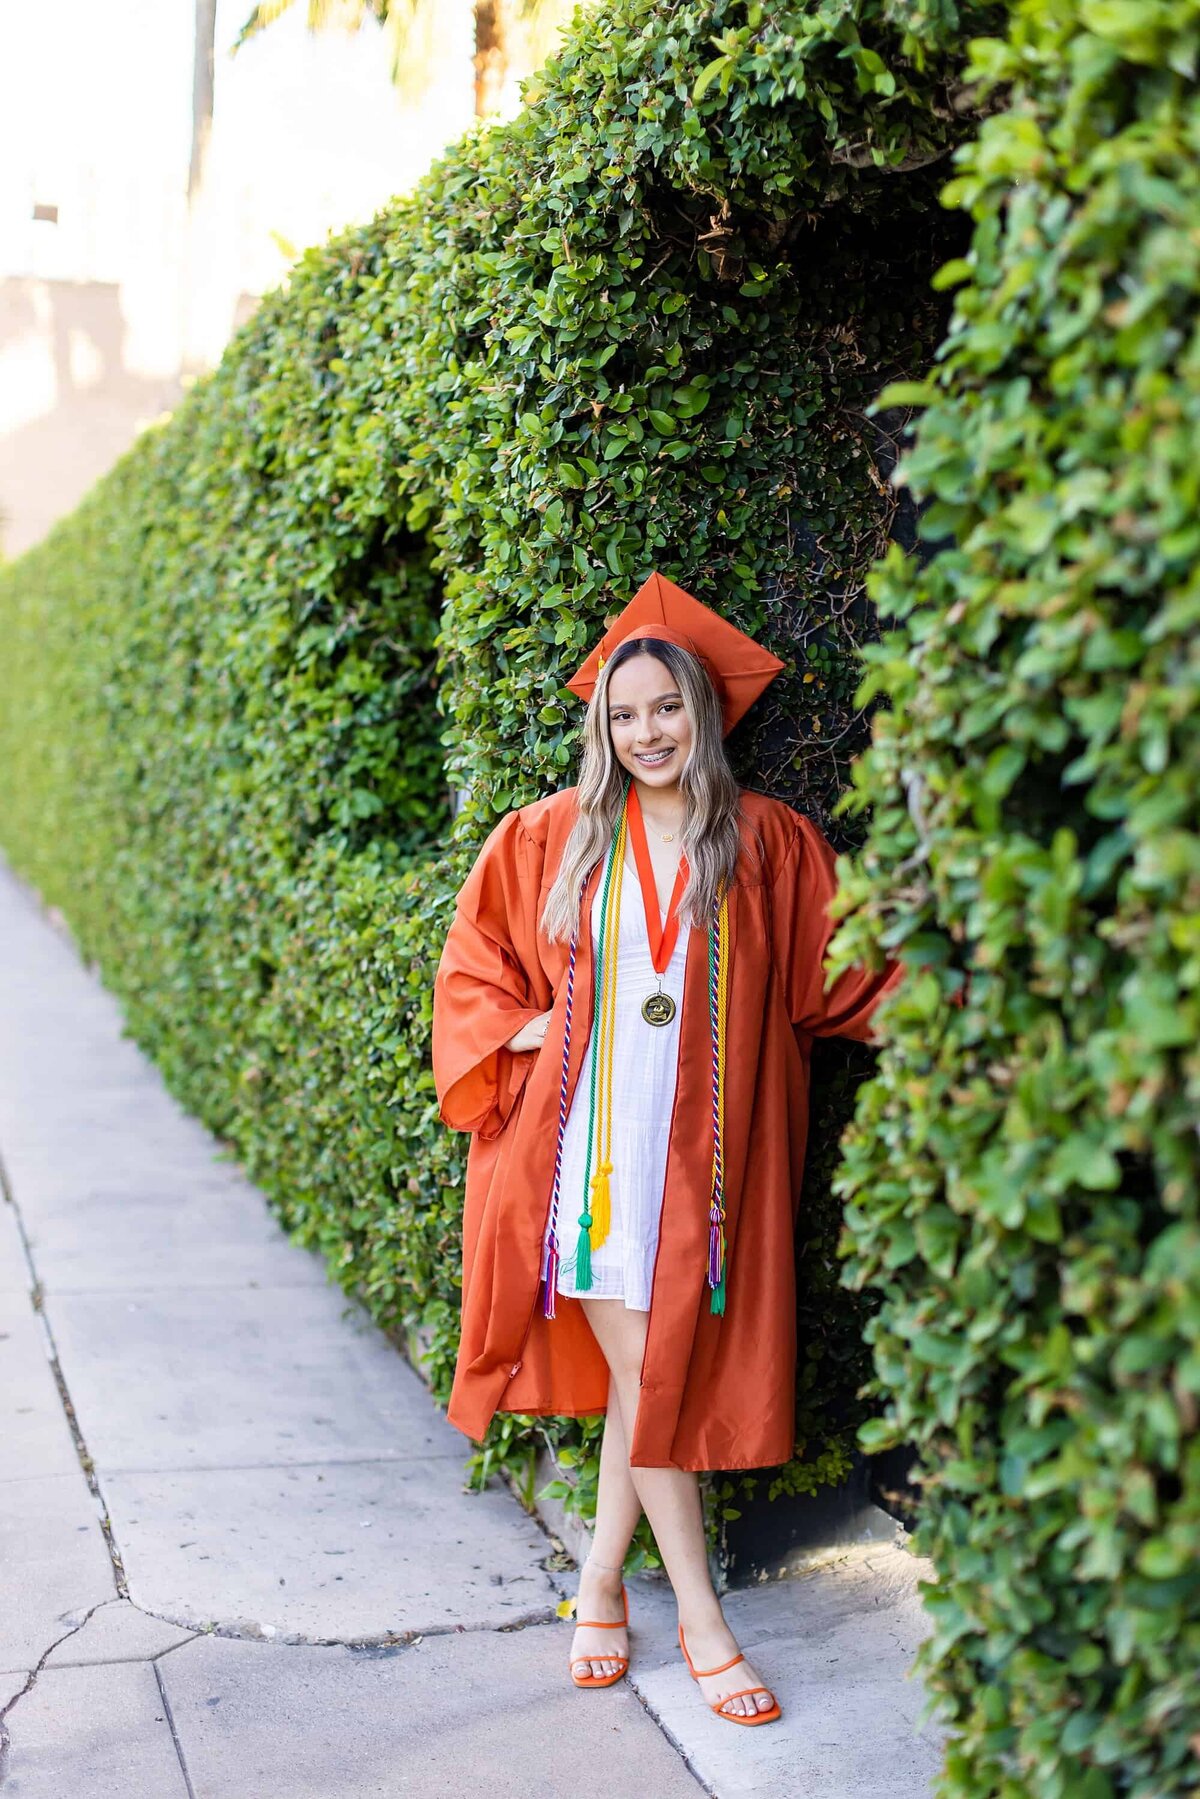 Senior in orange cap and gown